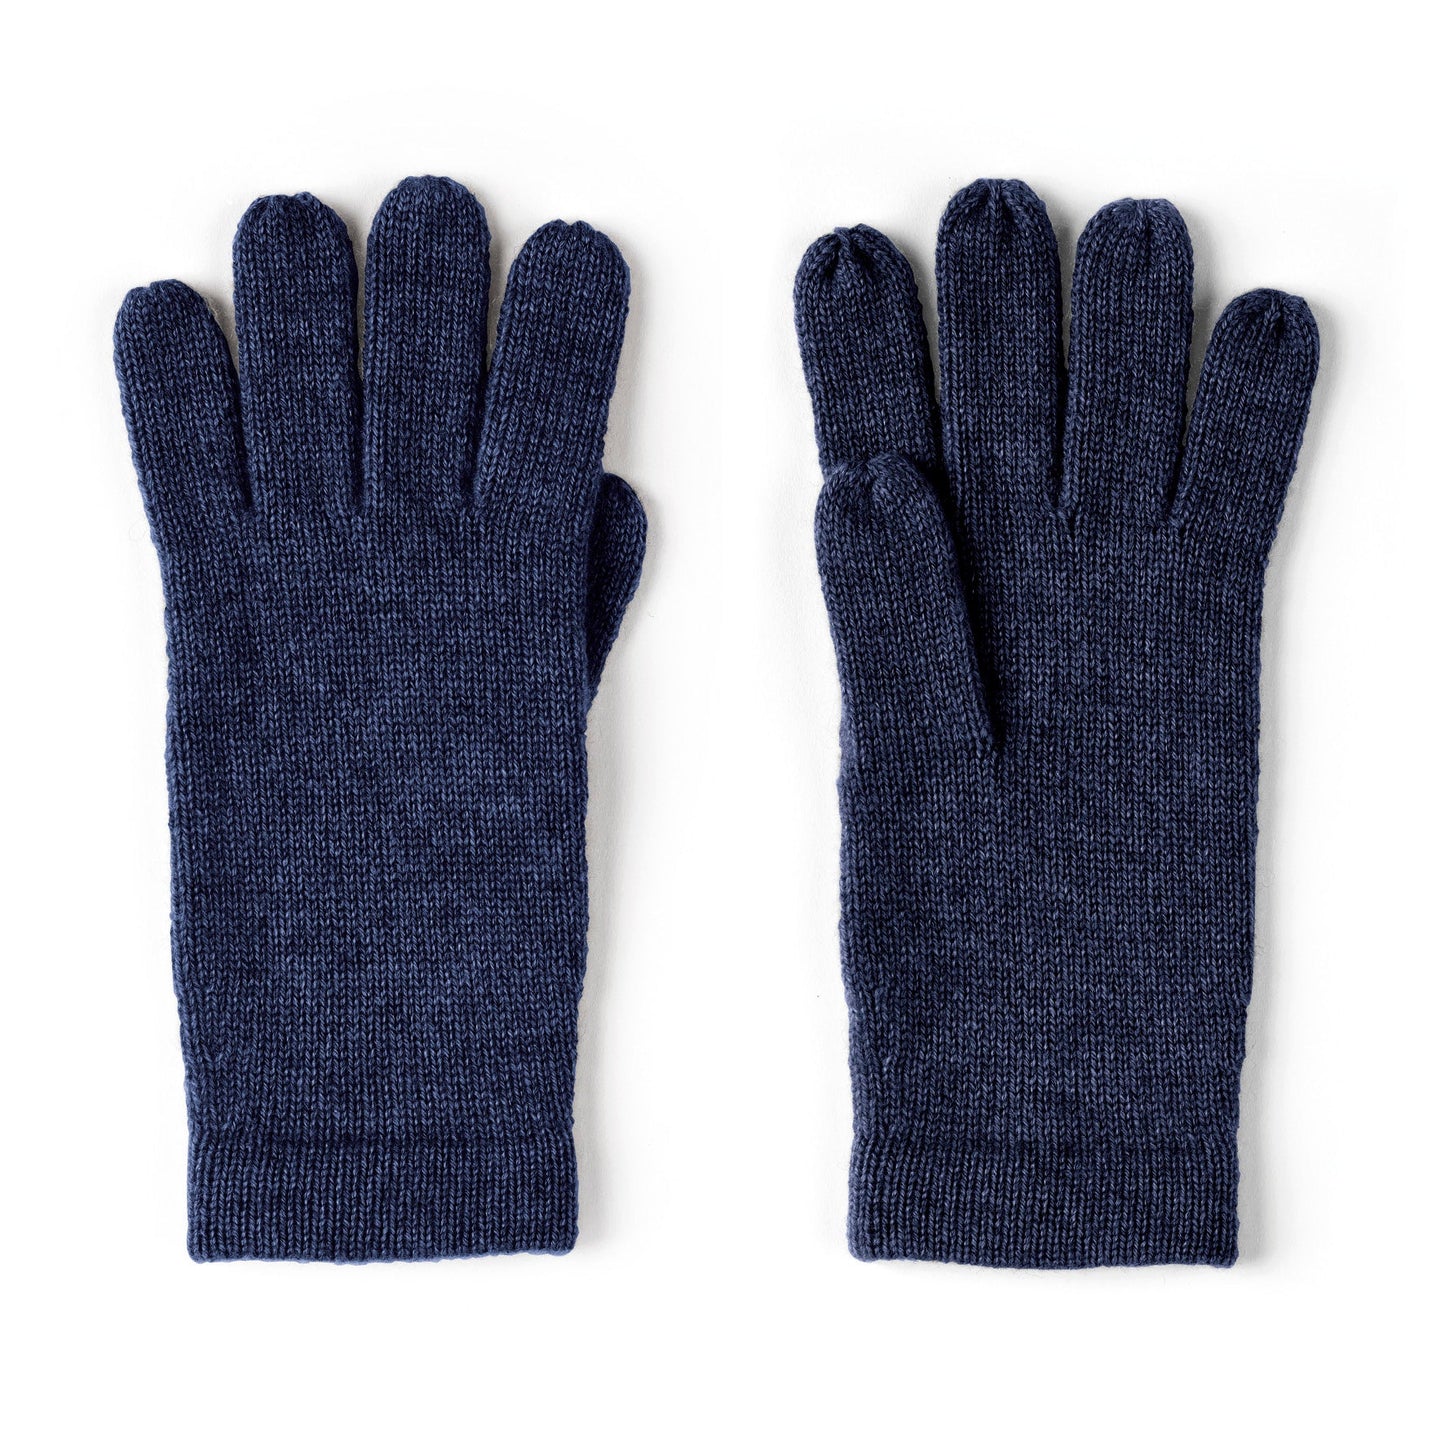 Gloves cashmere - Navy blue